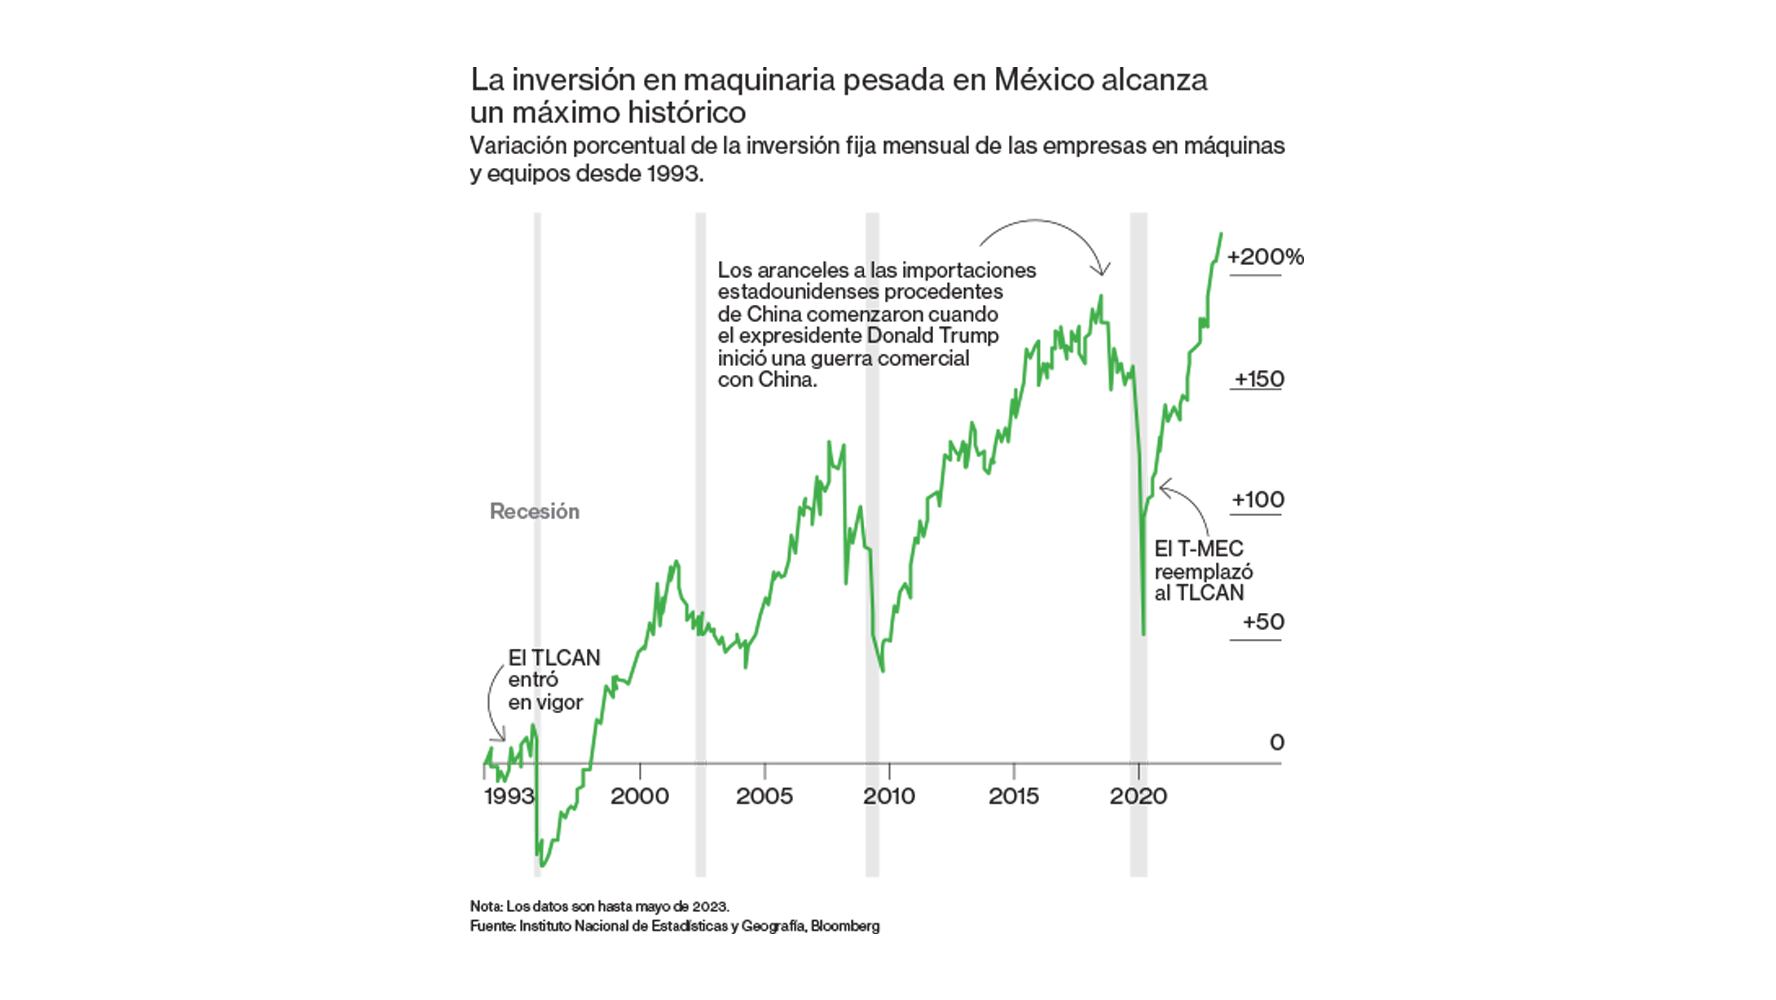 ¿Cuál ha sido la inversión fija de México en maquinaria pesada desde 1993?